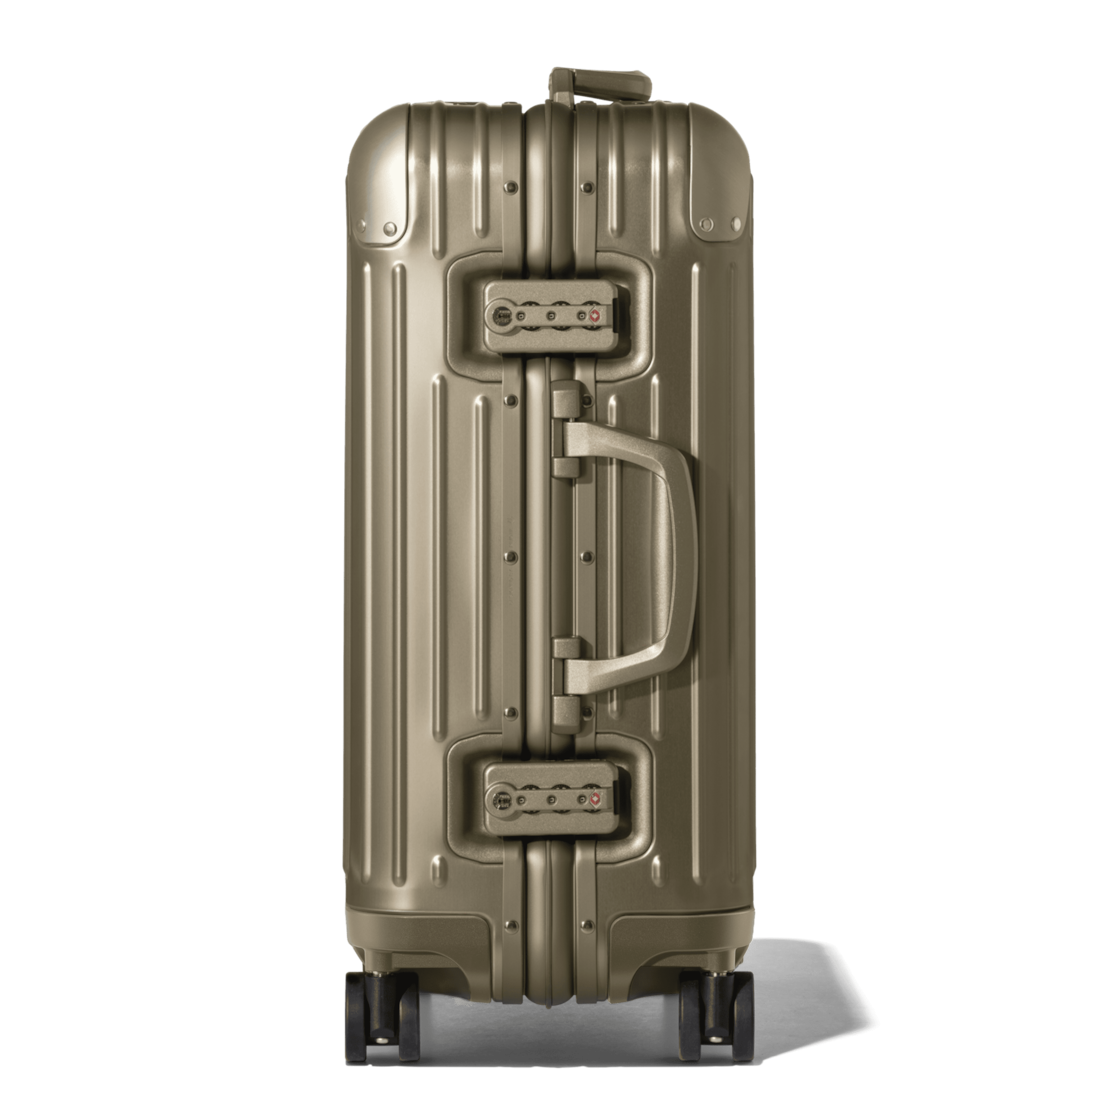 Original Cabin Aluminum Carry-On Suitcase | Titanium | RIMOWA